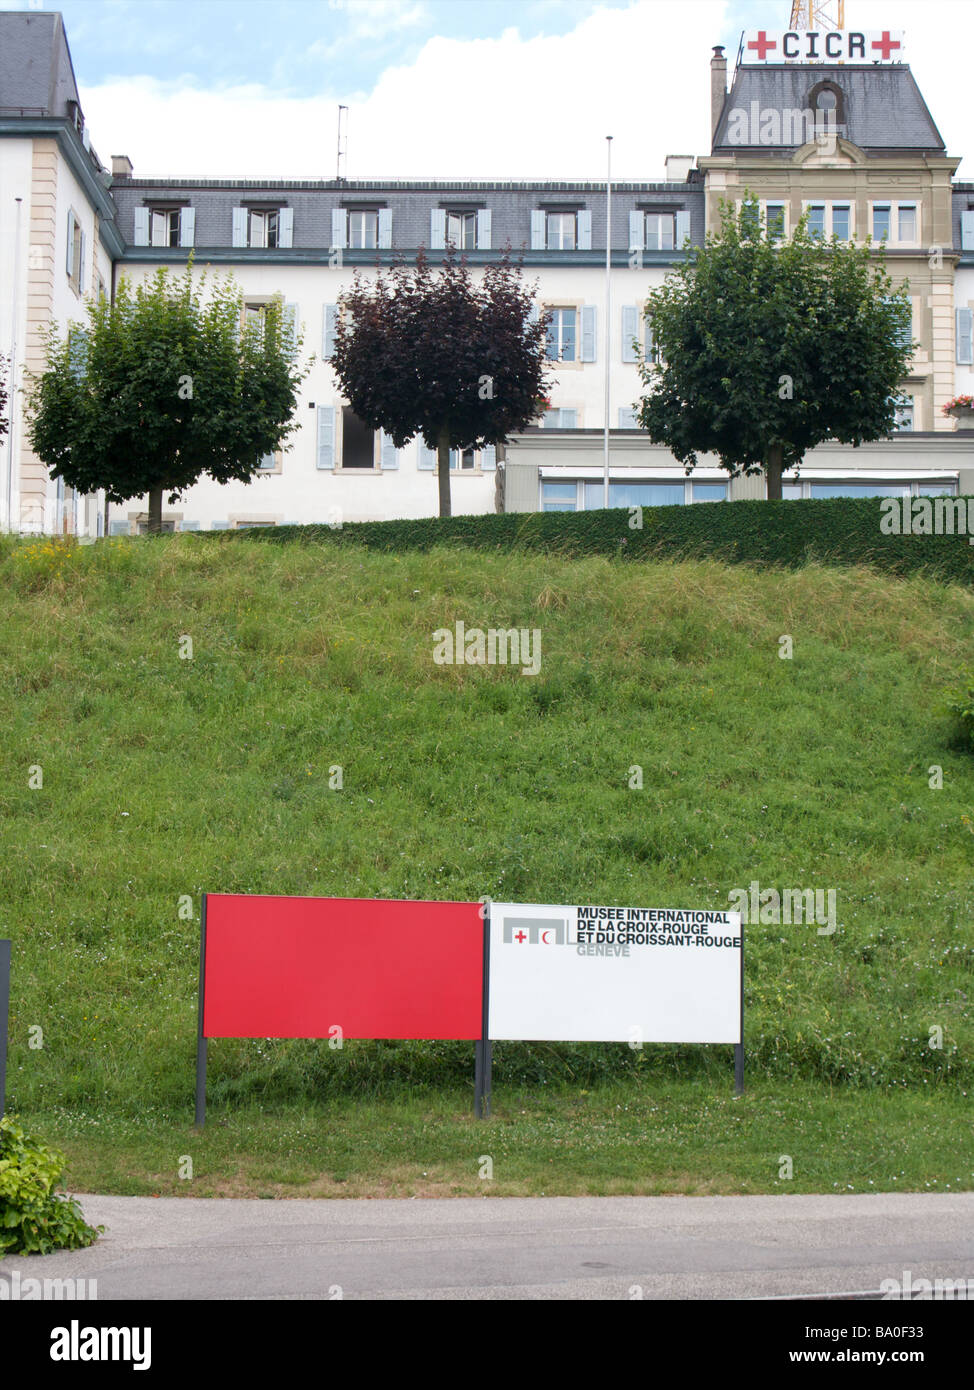 Ein Zeichen außerhalb der roten Halbmond oder das rote Kreuz internationale medizinische Hilfe CICR Gebäude, Sitz IKRK, Genf, Schweiz Stockfoto